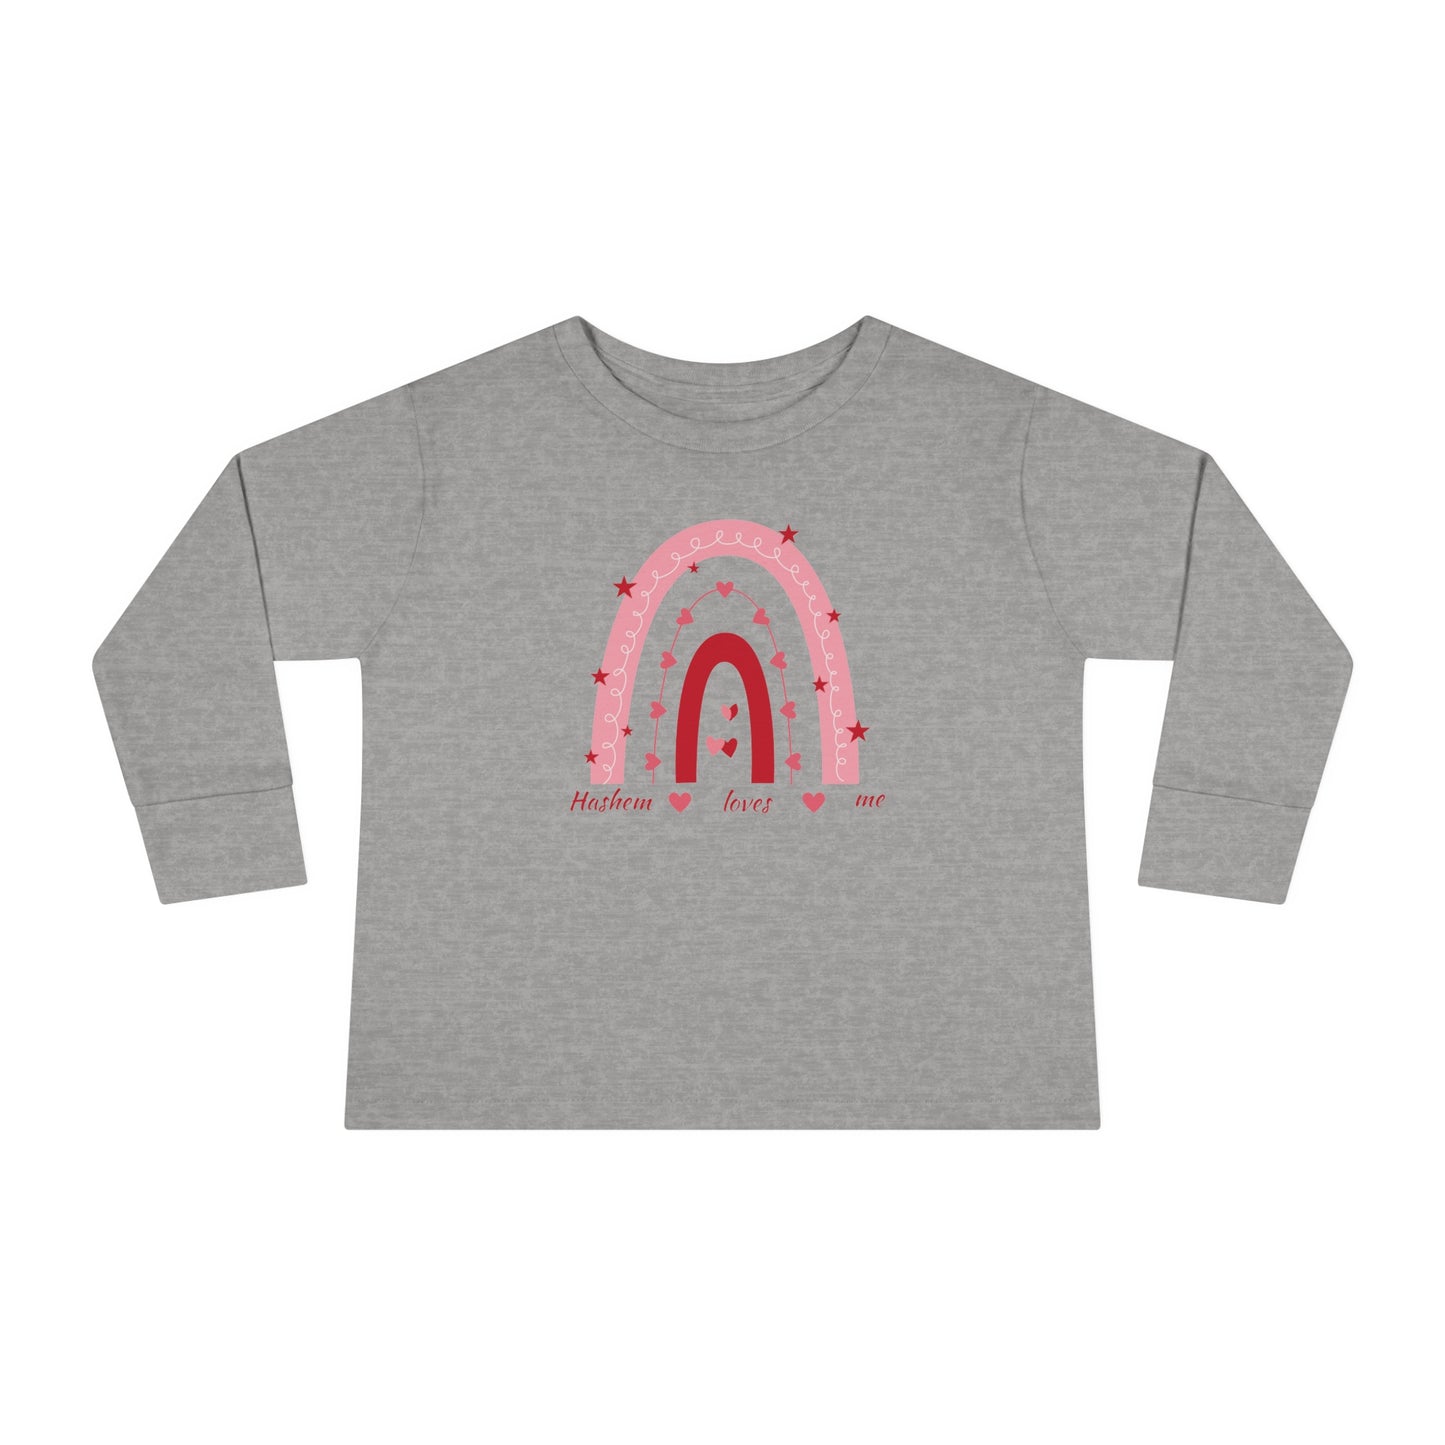 Toddler Girls'Hashem Loves Me Long Sleevet-shirt